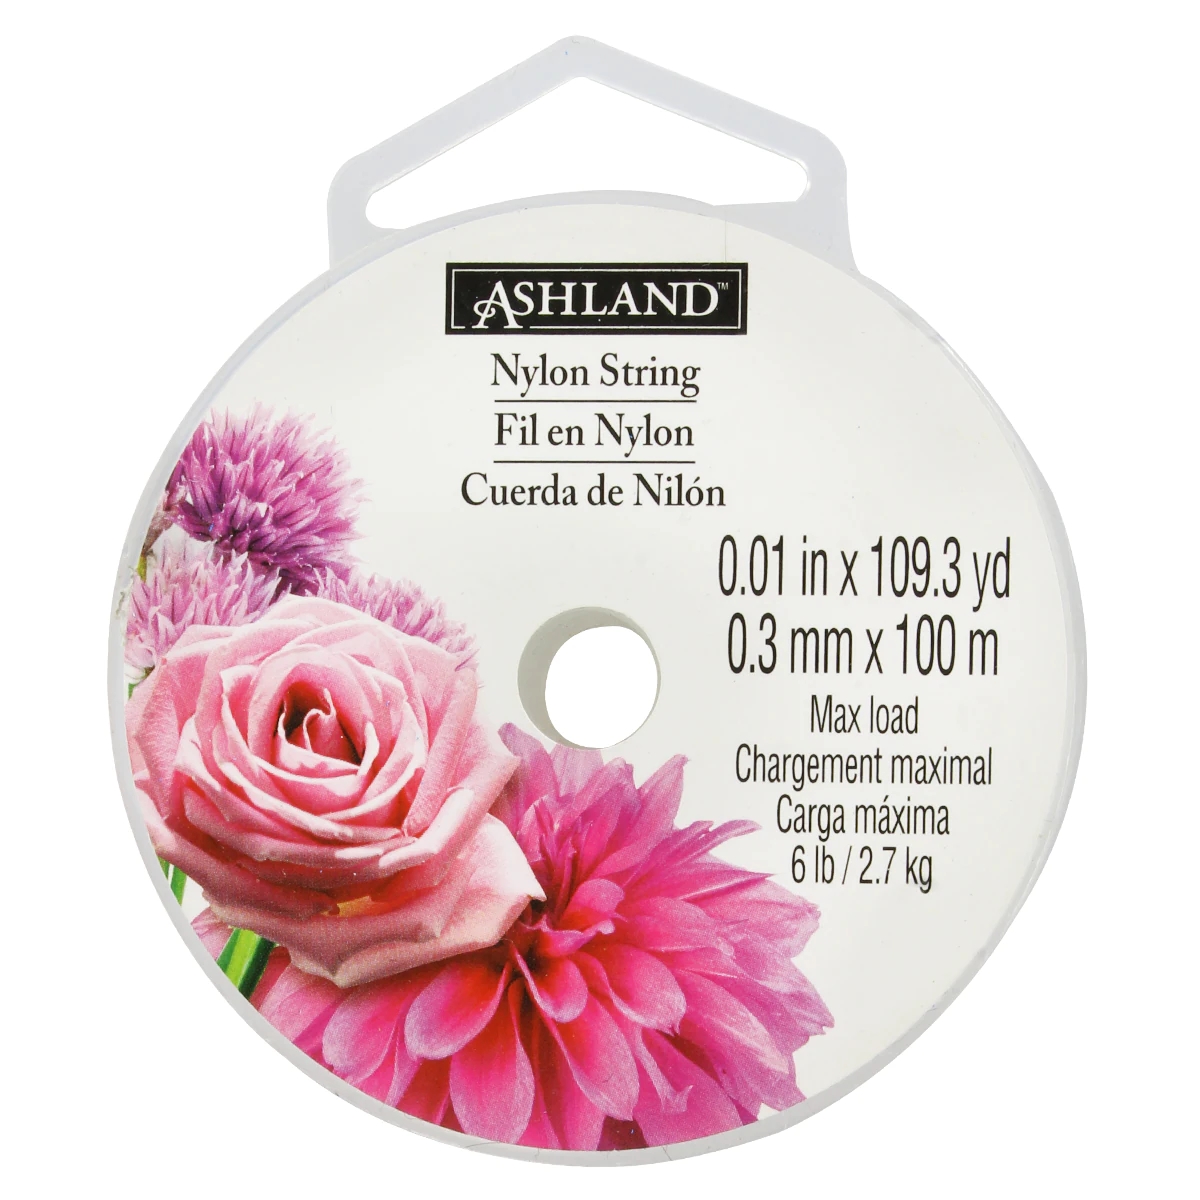 Ashland Nylon String - 109.3 yd